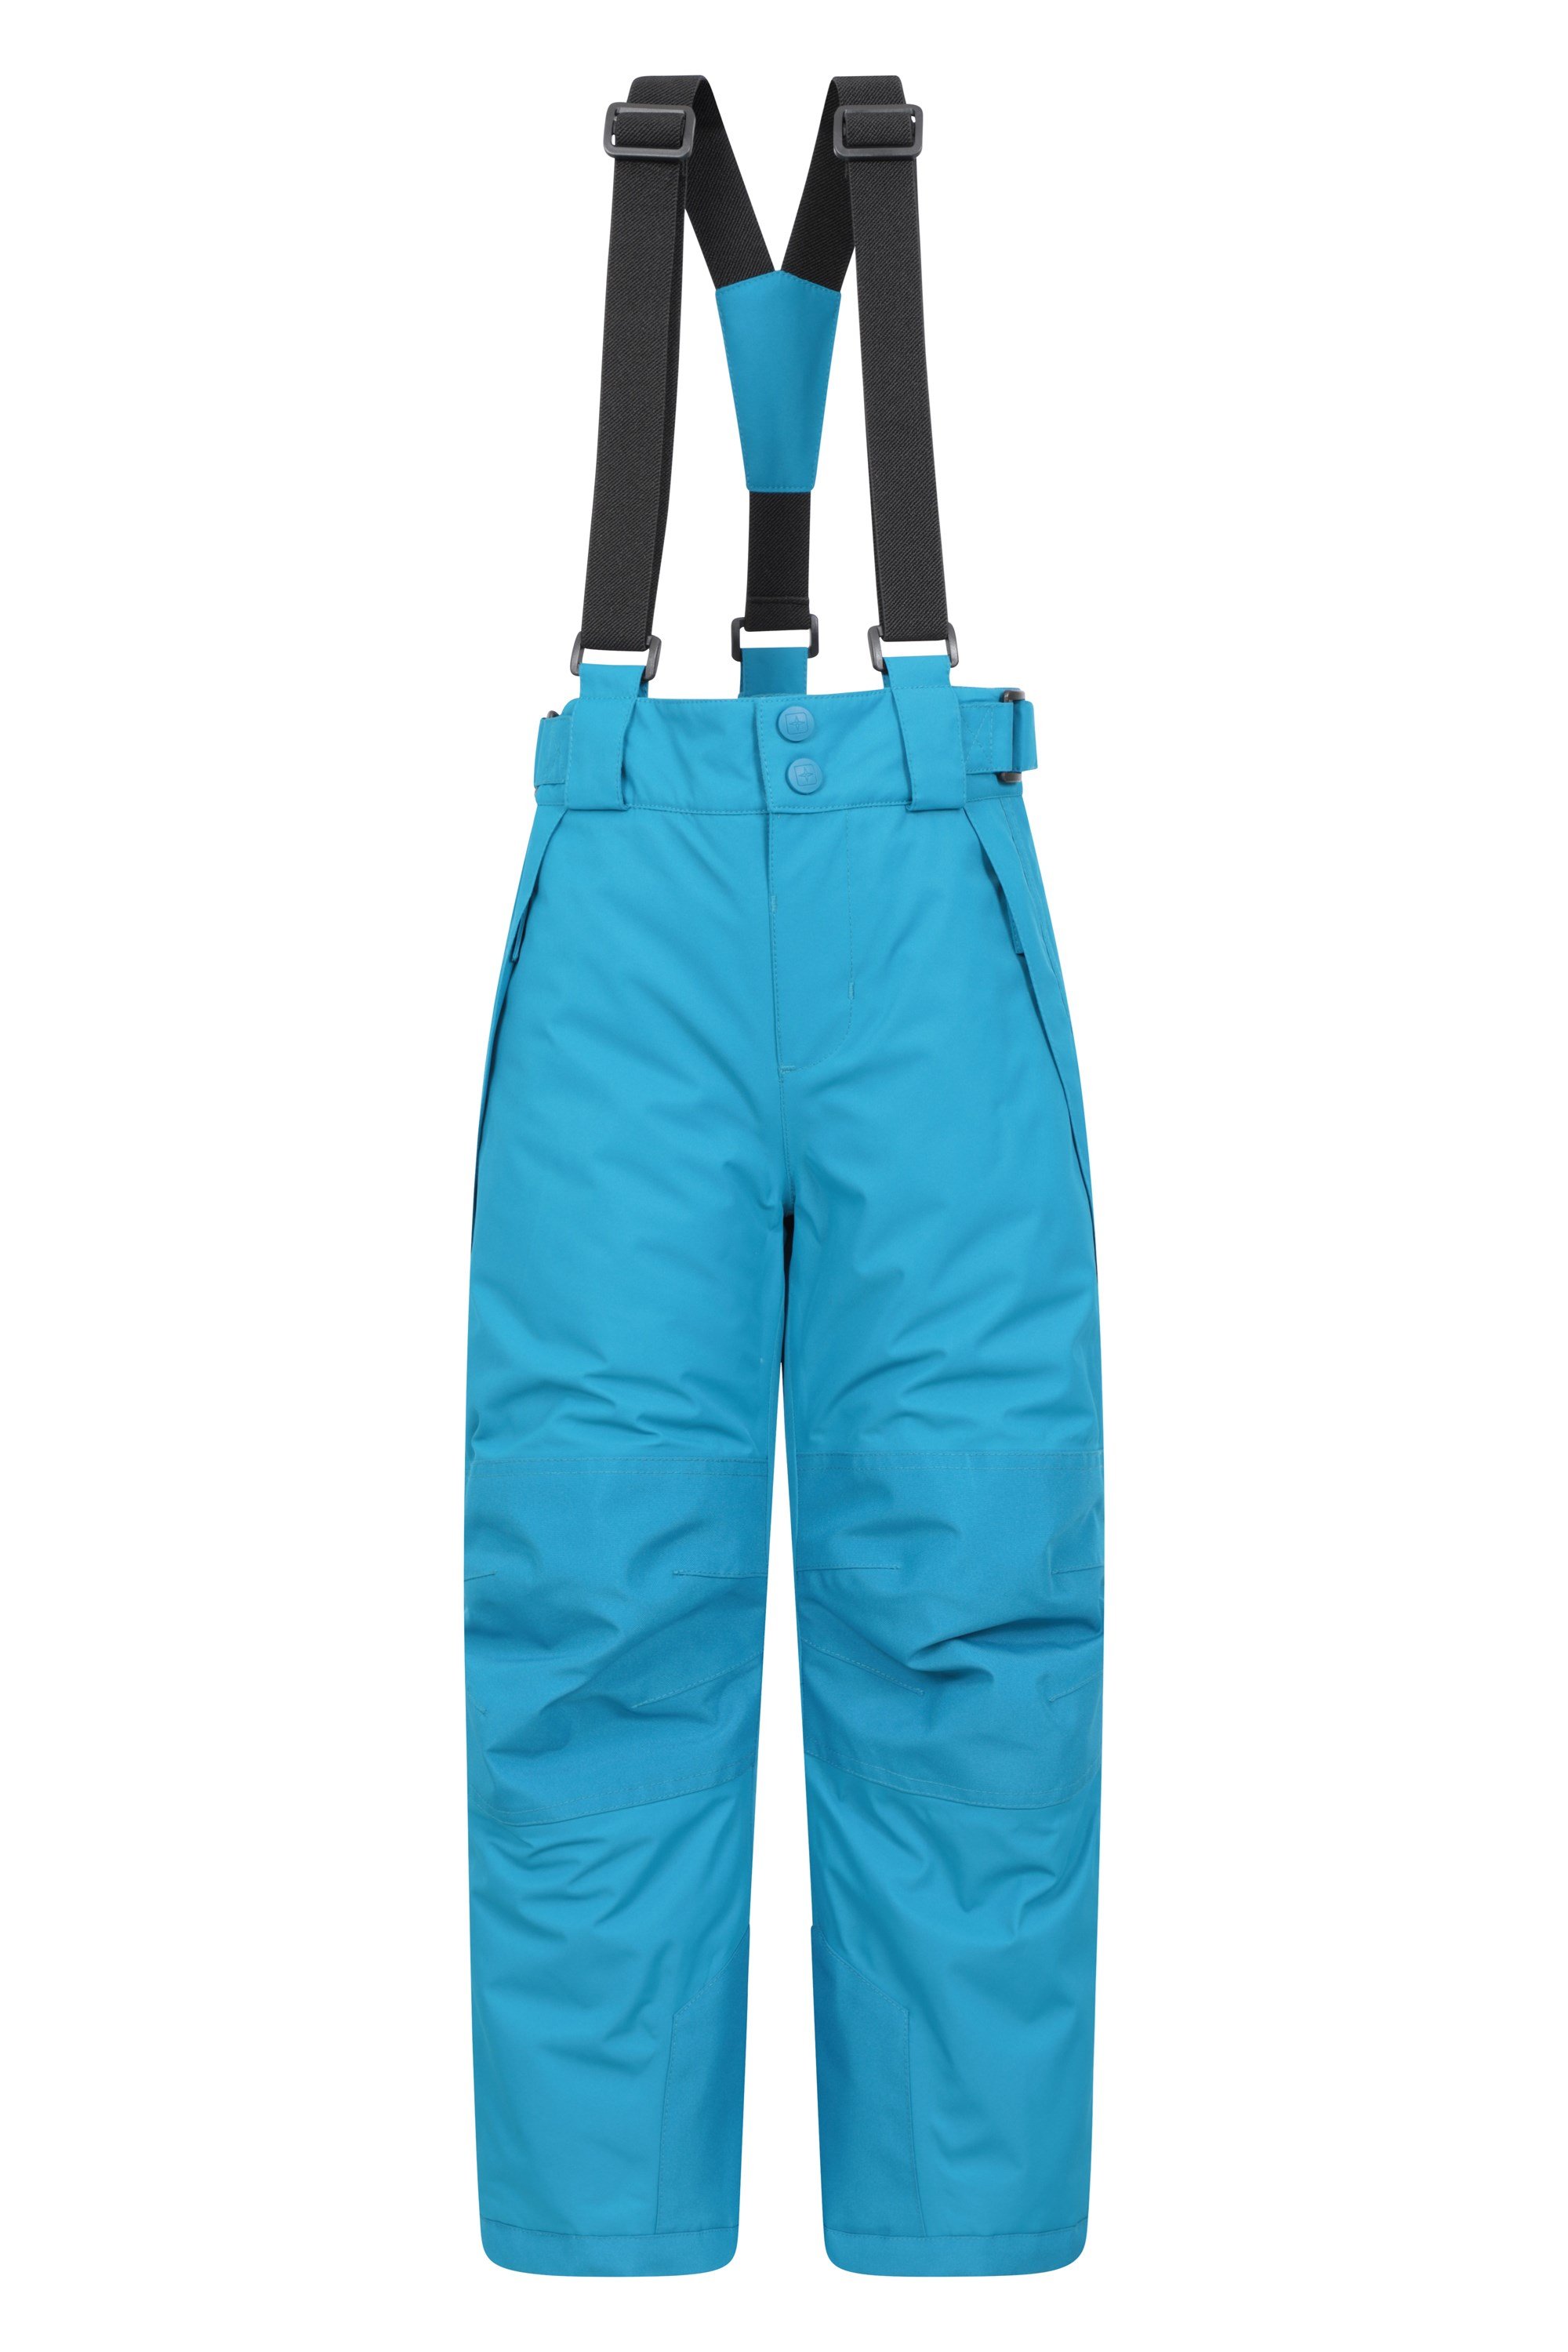 Falcon Extreme Kids Ski Pants - Light Blue